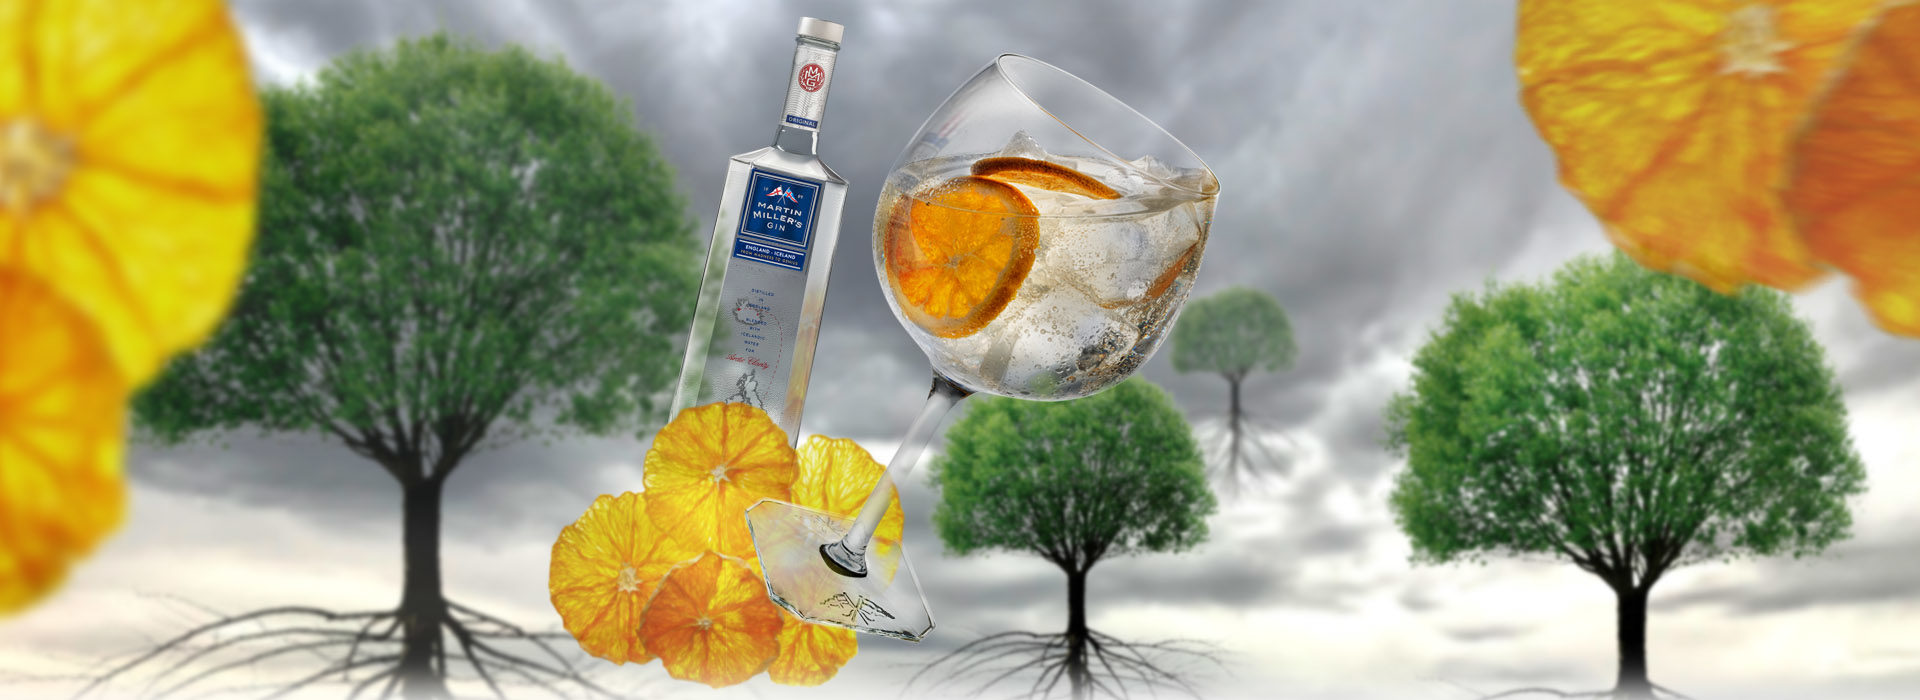 Gin & Tonic con Naranja Deshidratada